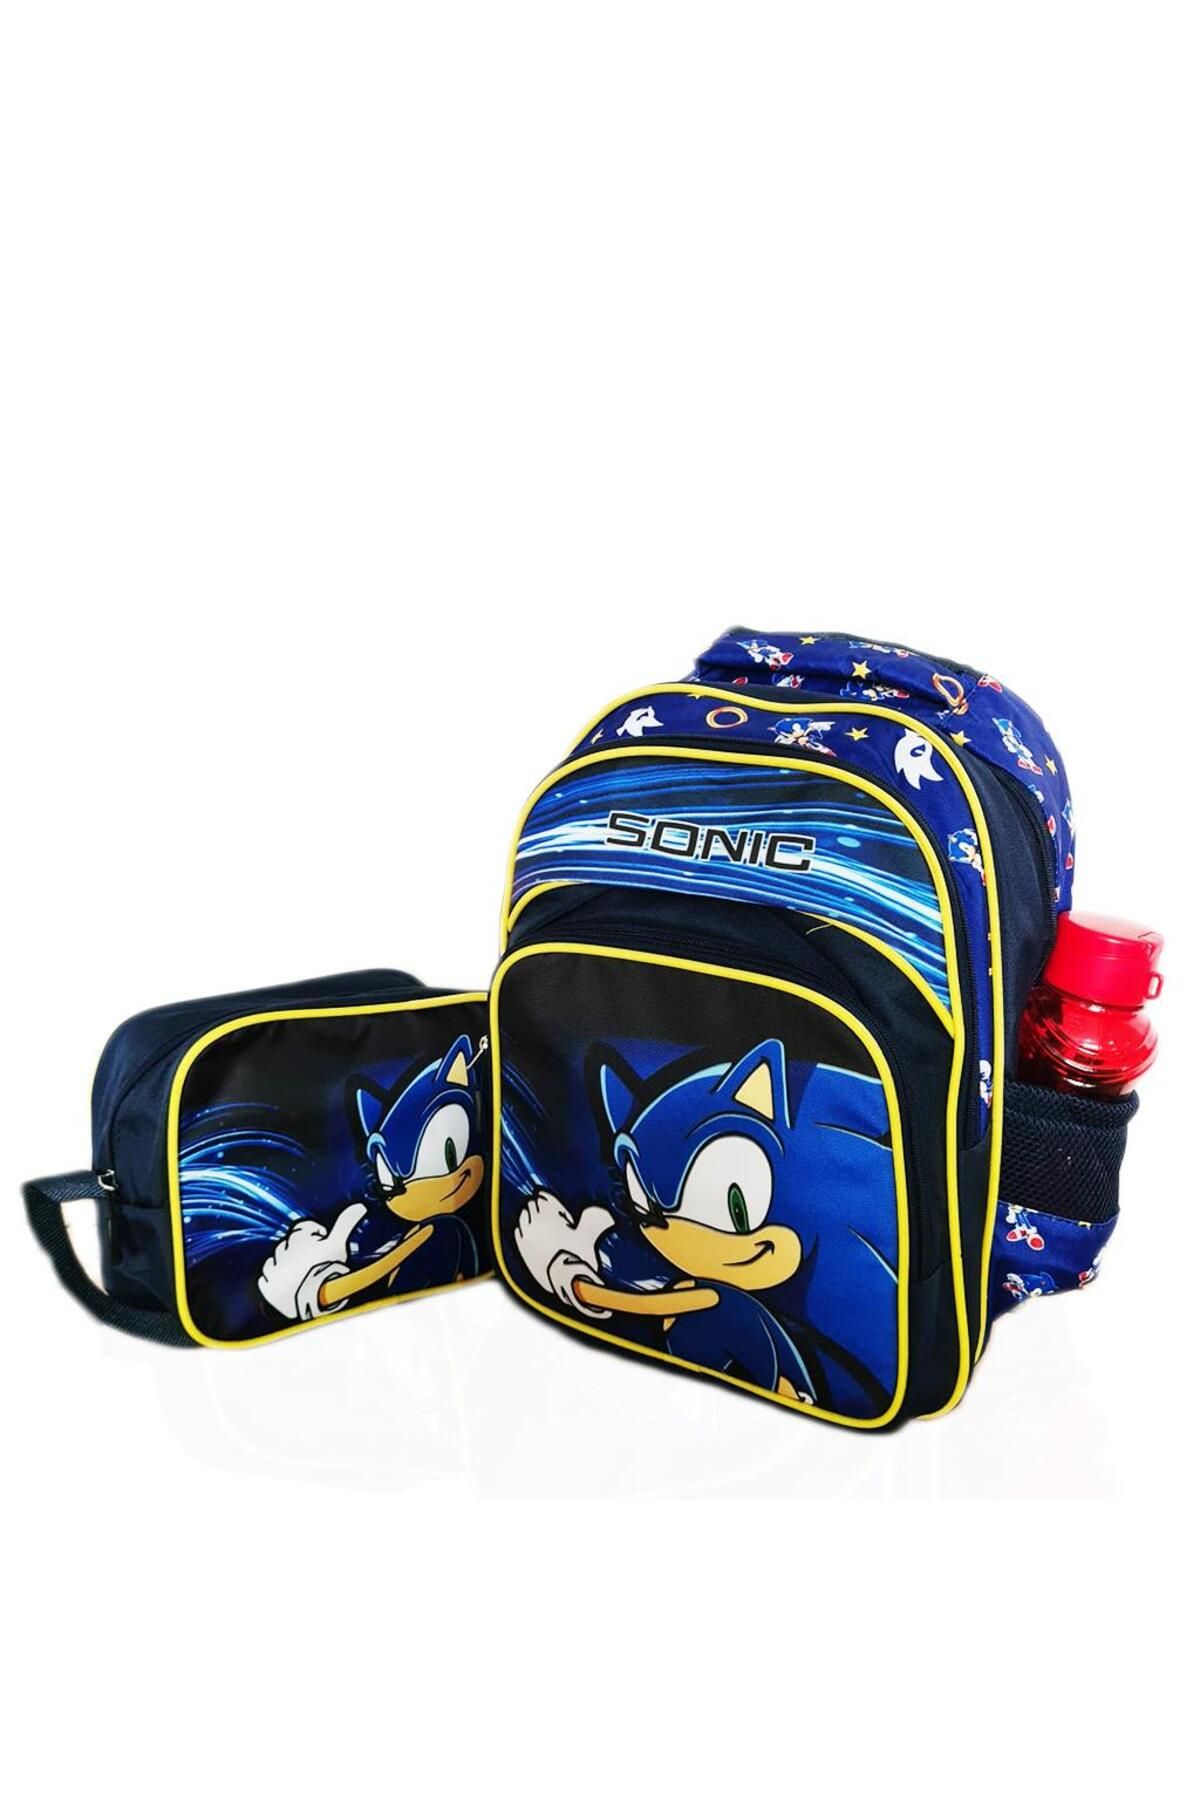 Mashotrend Tamam Sonic Sırt Çantası + Beslenme - Sonic İlkokul Çantası - Erkek Çocuk Çanta Sonic Okul Çantası